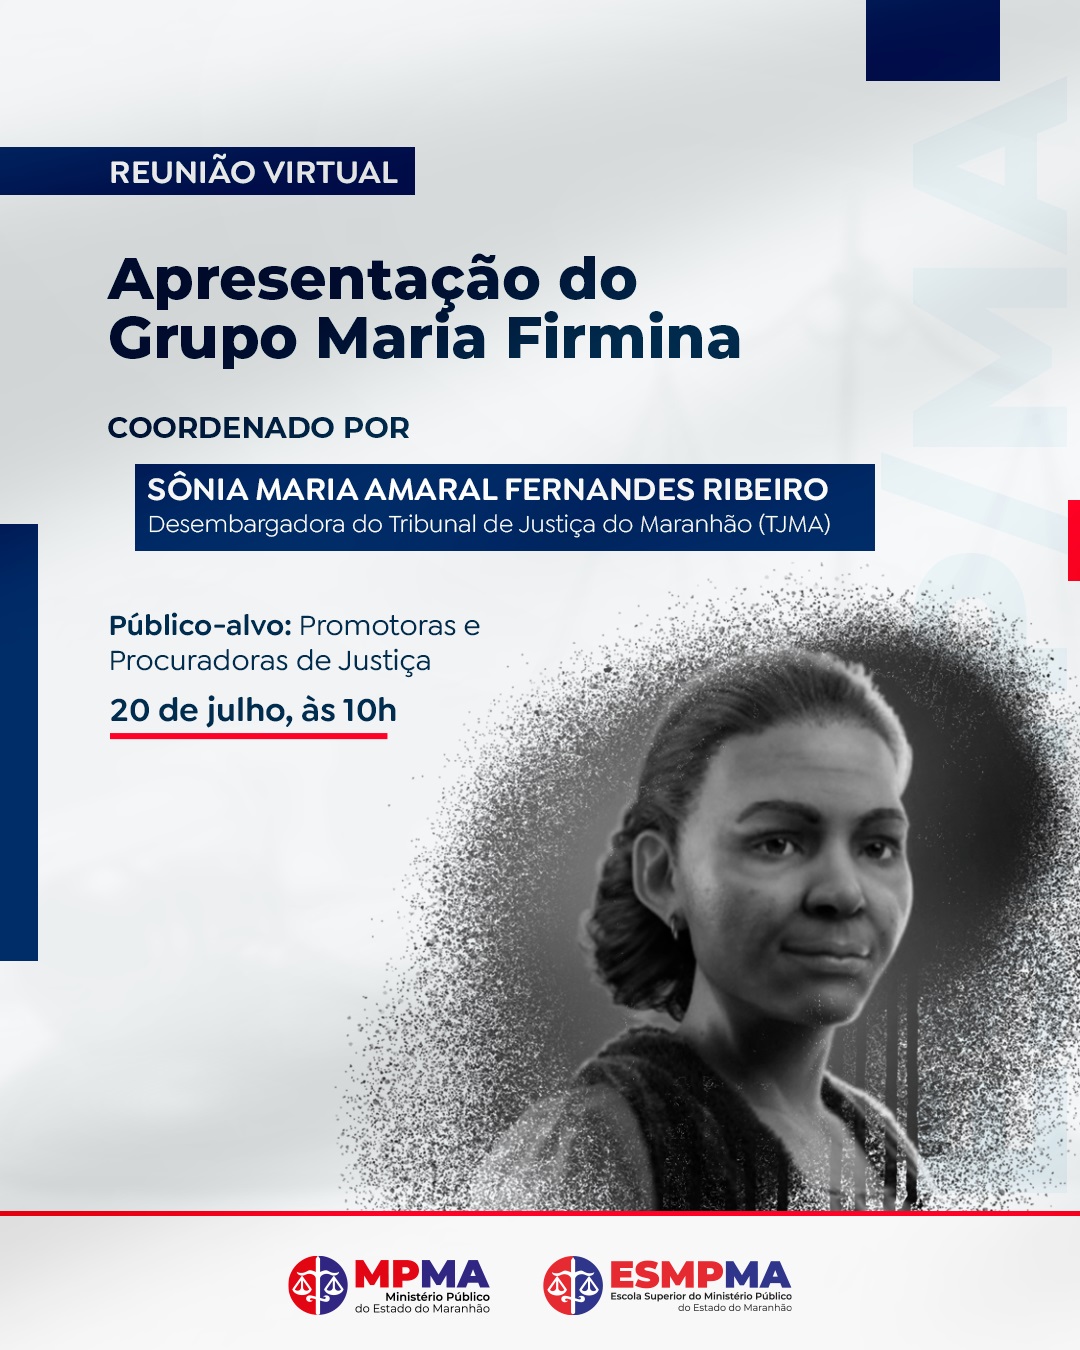 Reunião Virtual - Apresentação do Grupo Maria Firmina